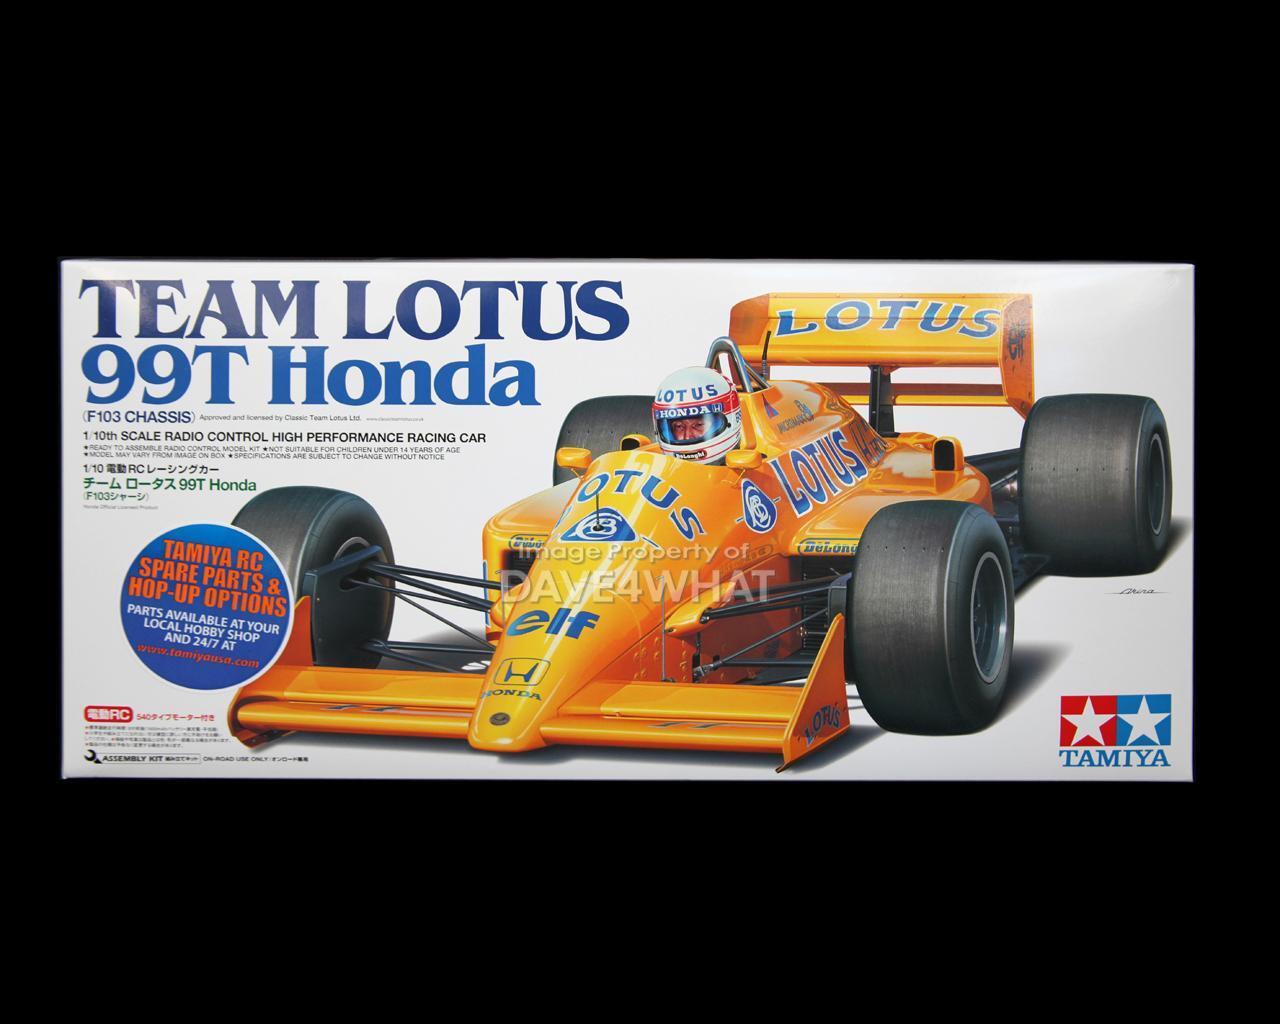 Tamiya 1/10 F1 LOTUS 99T HONDA R/C Car Kit # 84191 New